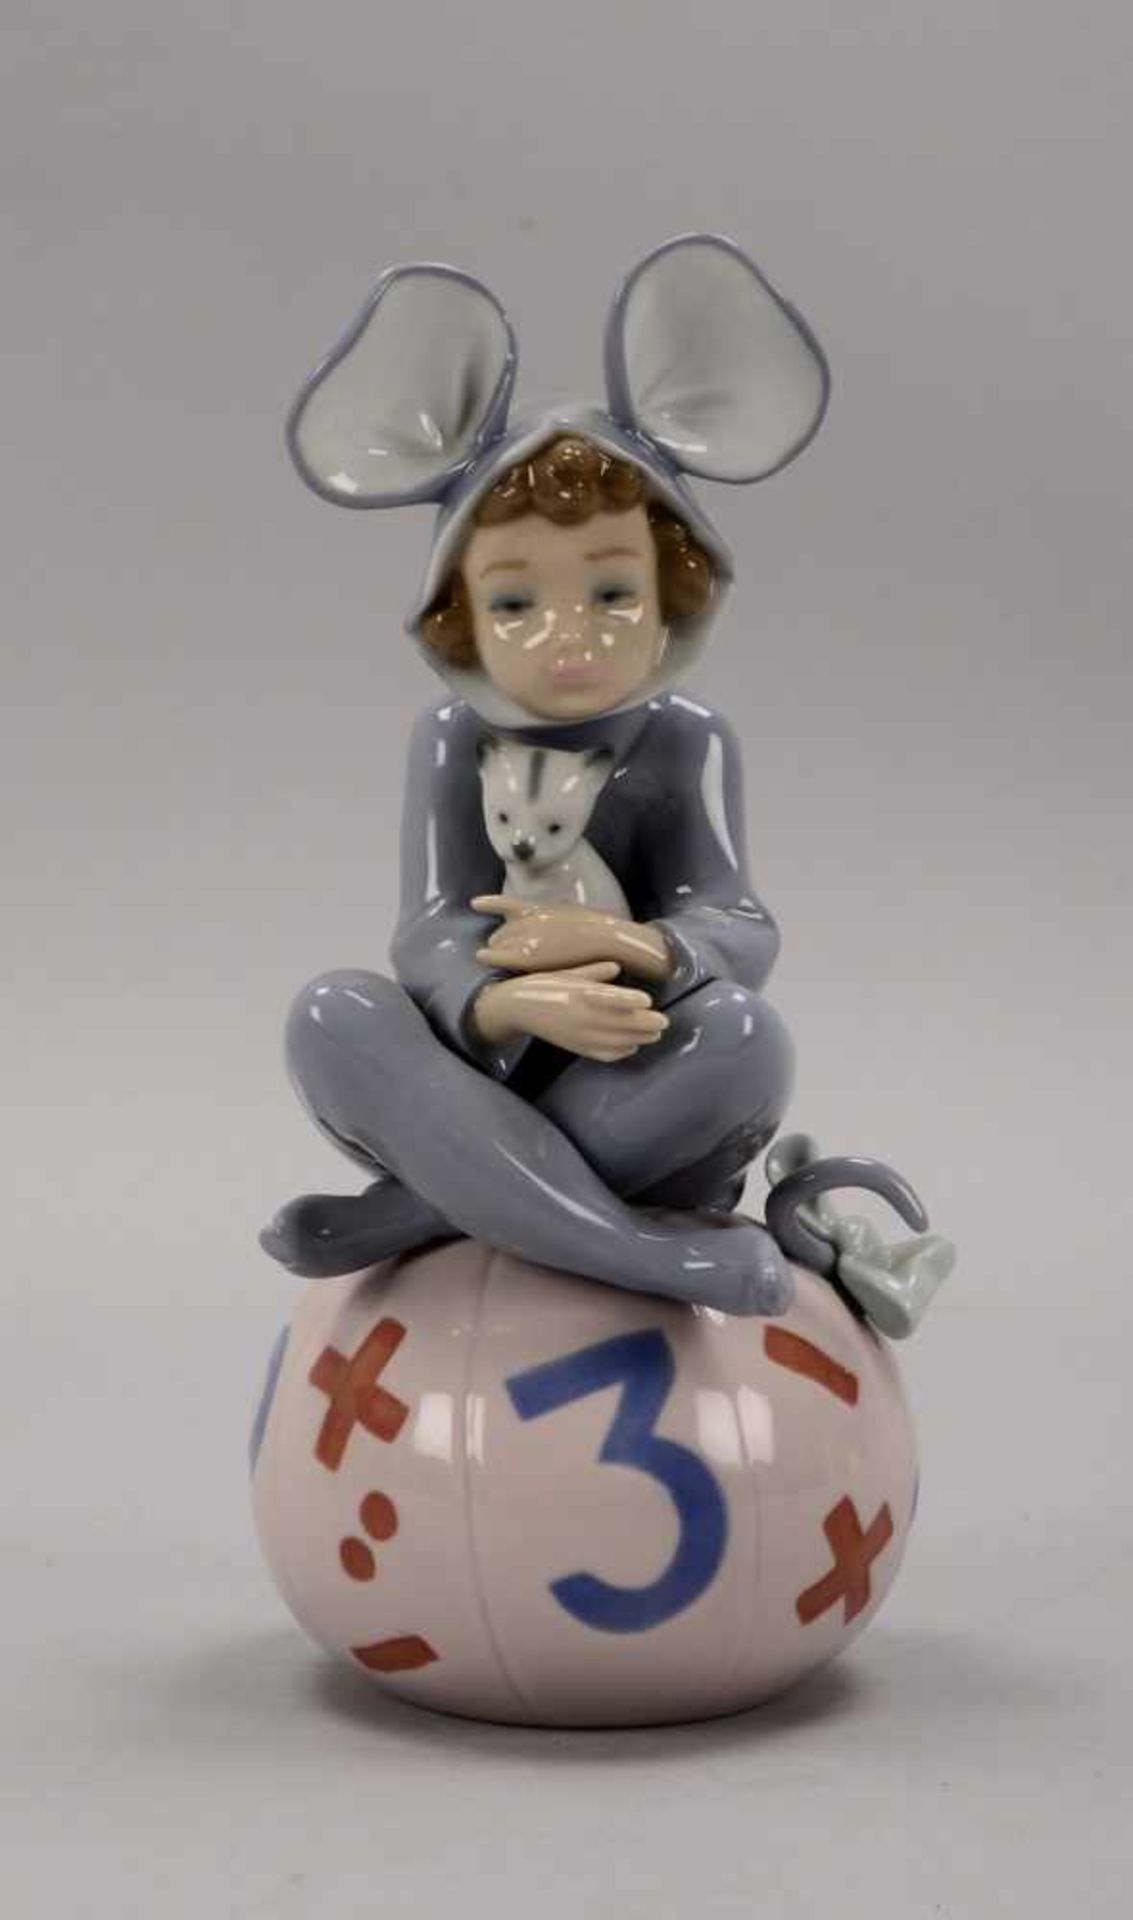 Lladro/Spanien, Porzellanfigur, 'Liebevolles Mäuschen', pastellige Unterglasurfarben, Figur in